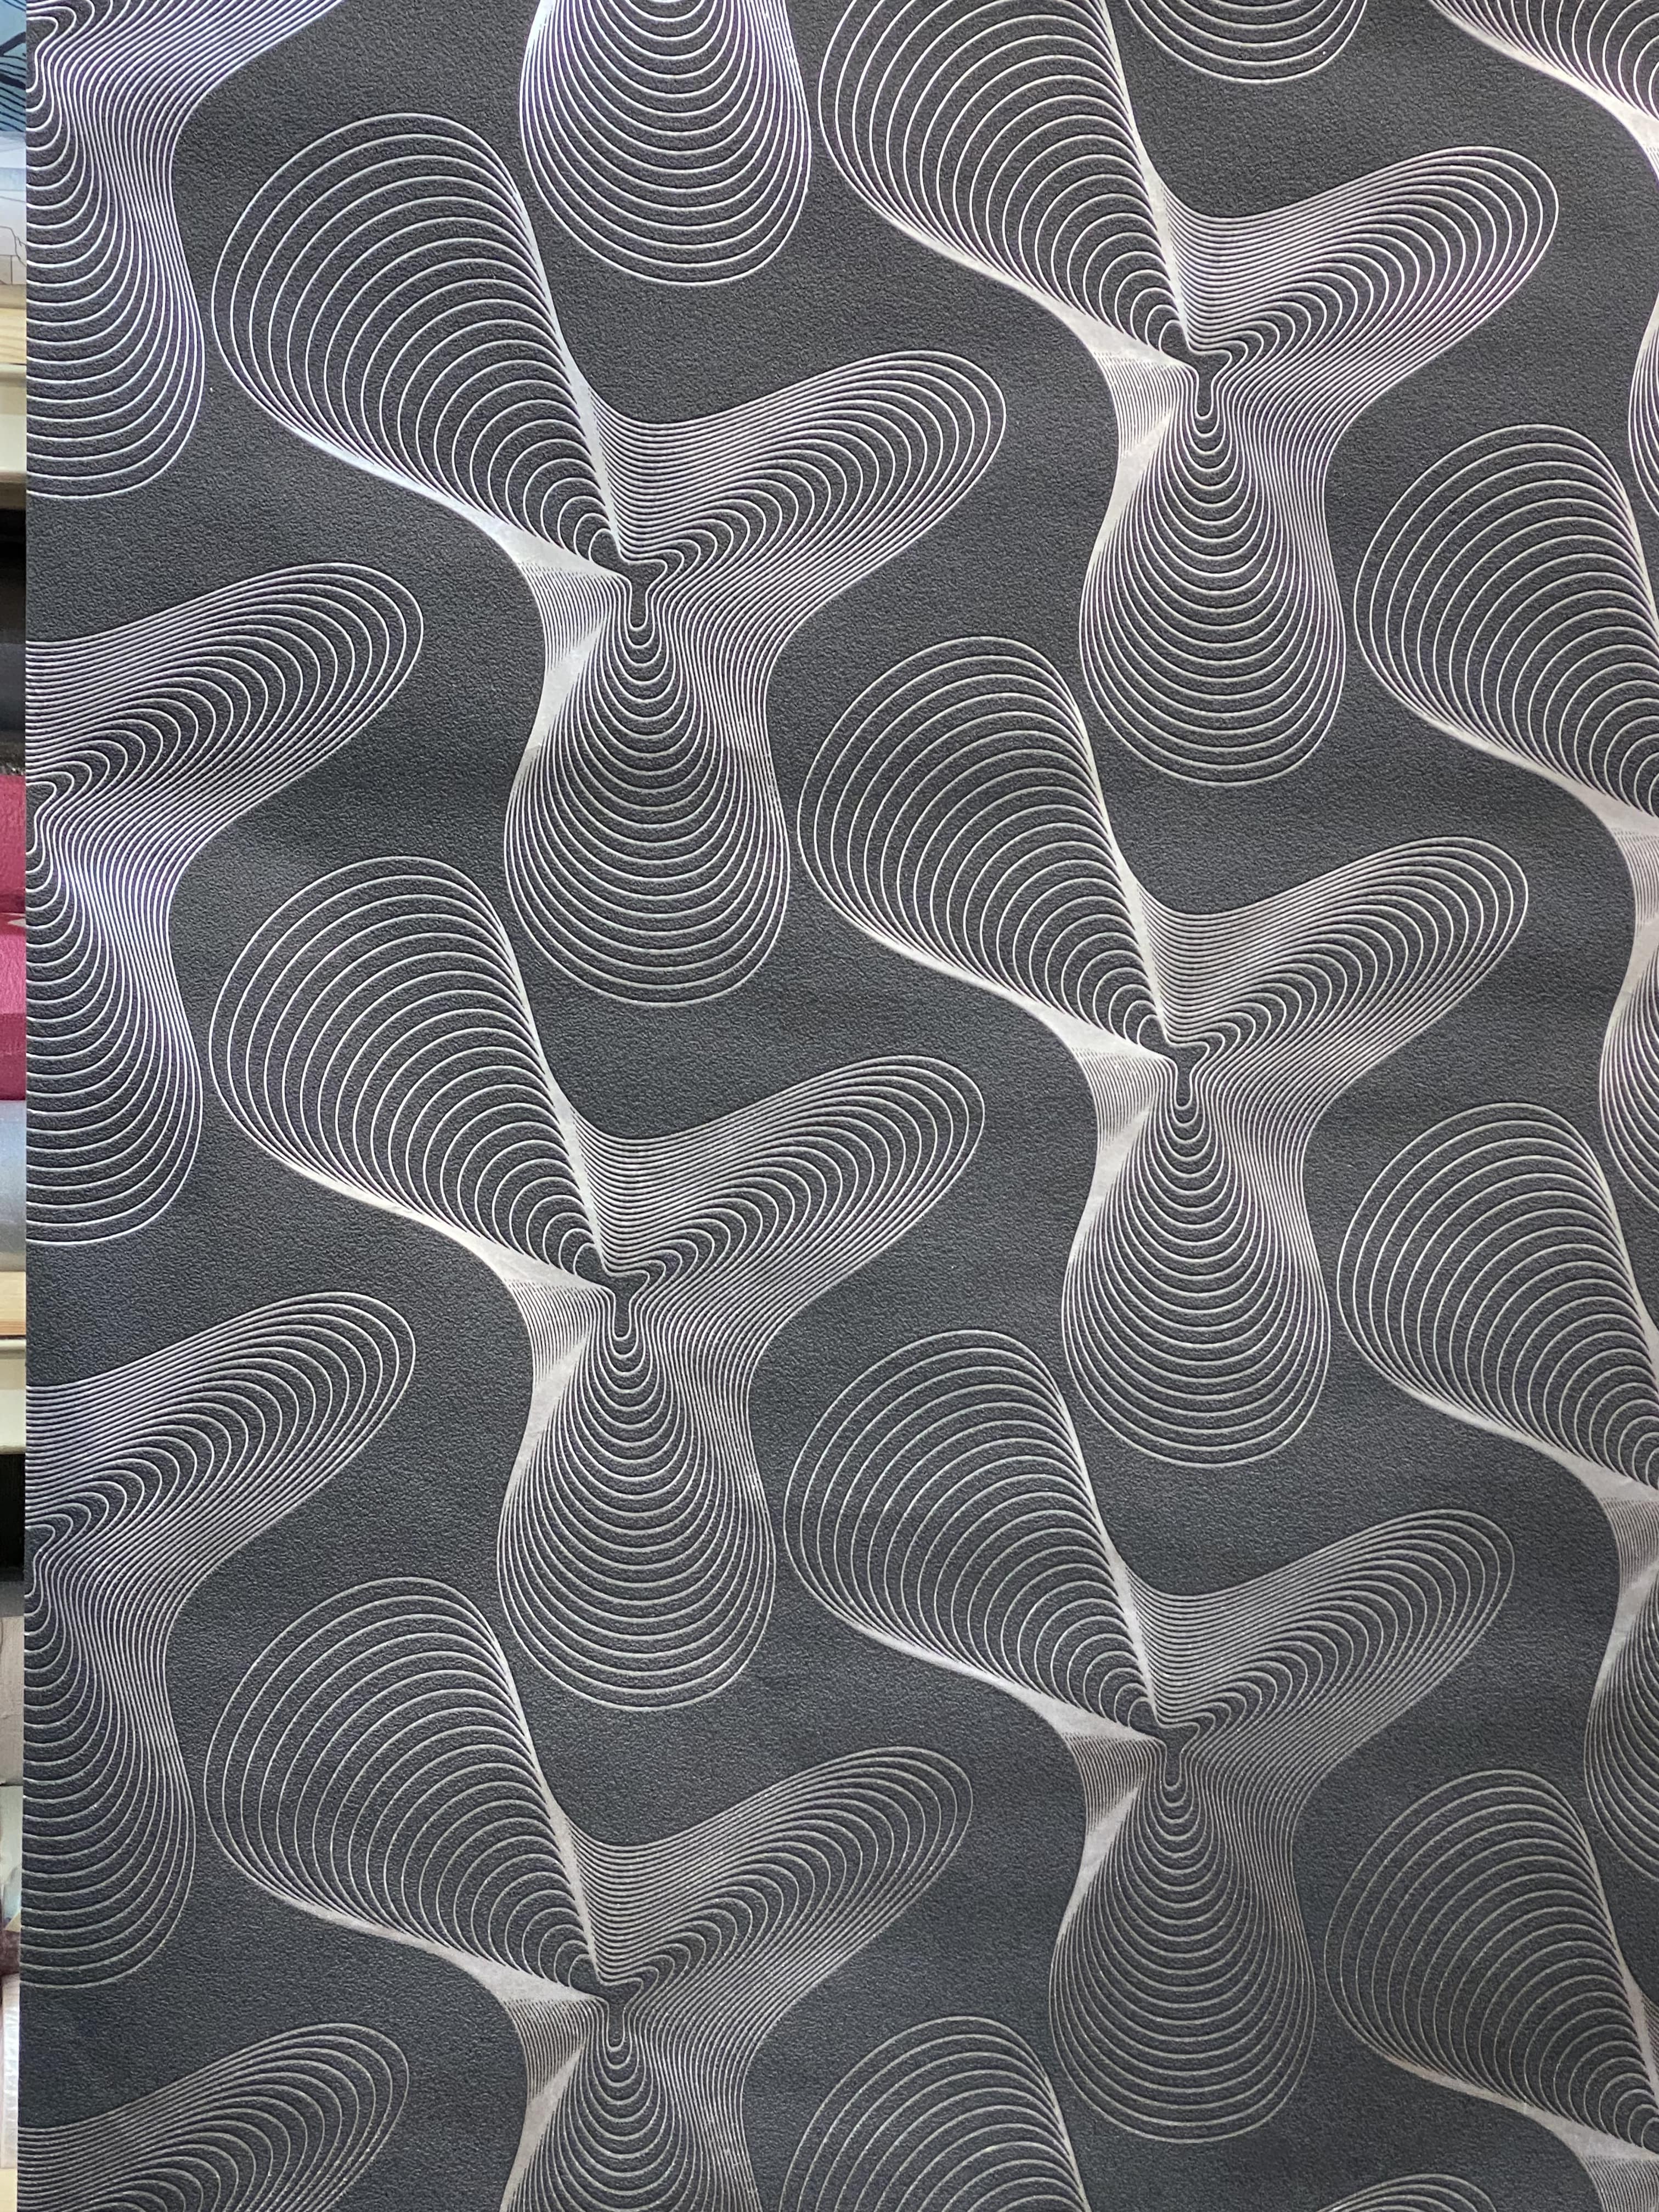 #Karim-Rashid #DesignerWallpaper By #Marburg #Retro #Silver/Black #52017